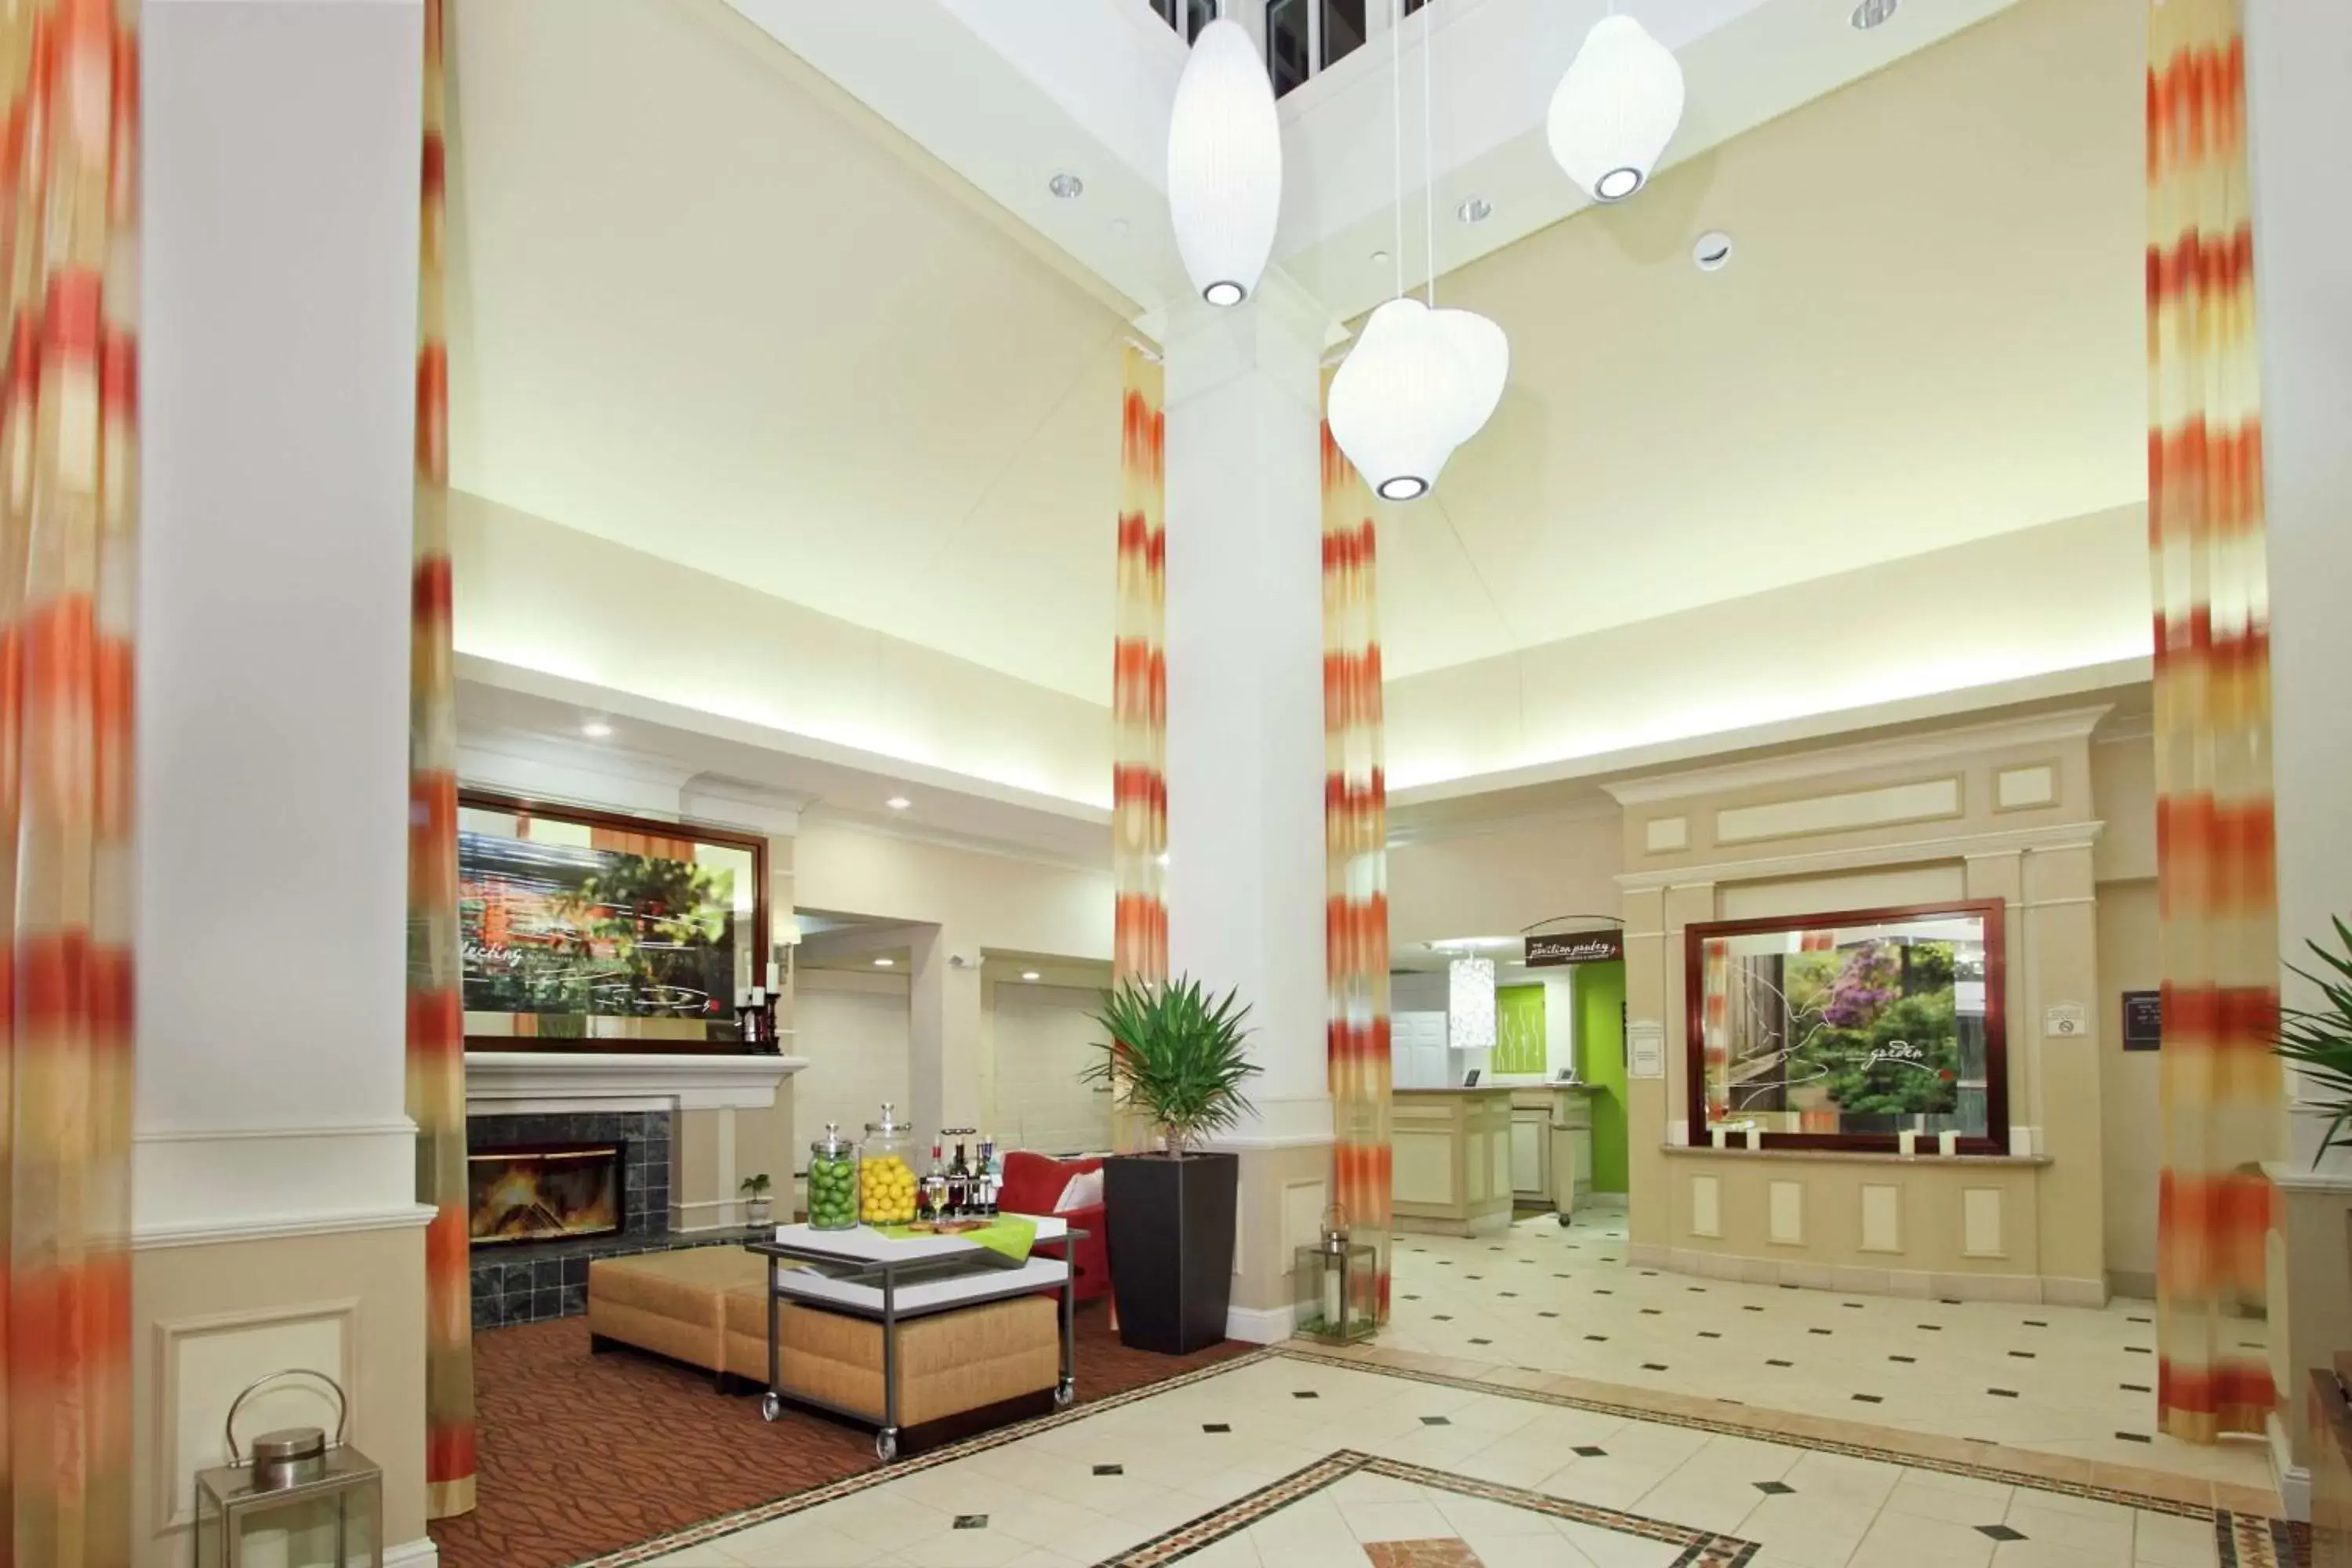 Lobby or reception, Lobby/Reception in Hilton Garden Inn Chesapeake Greenbrier